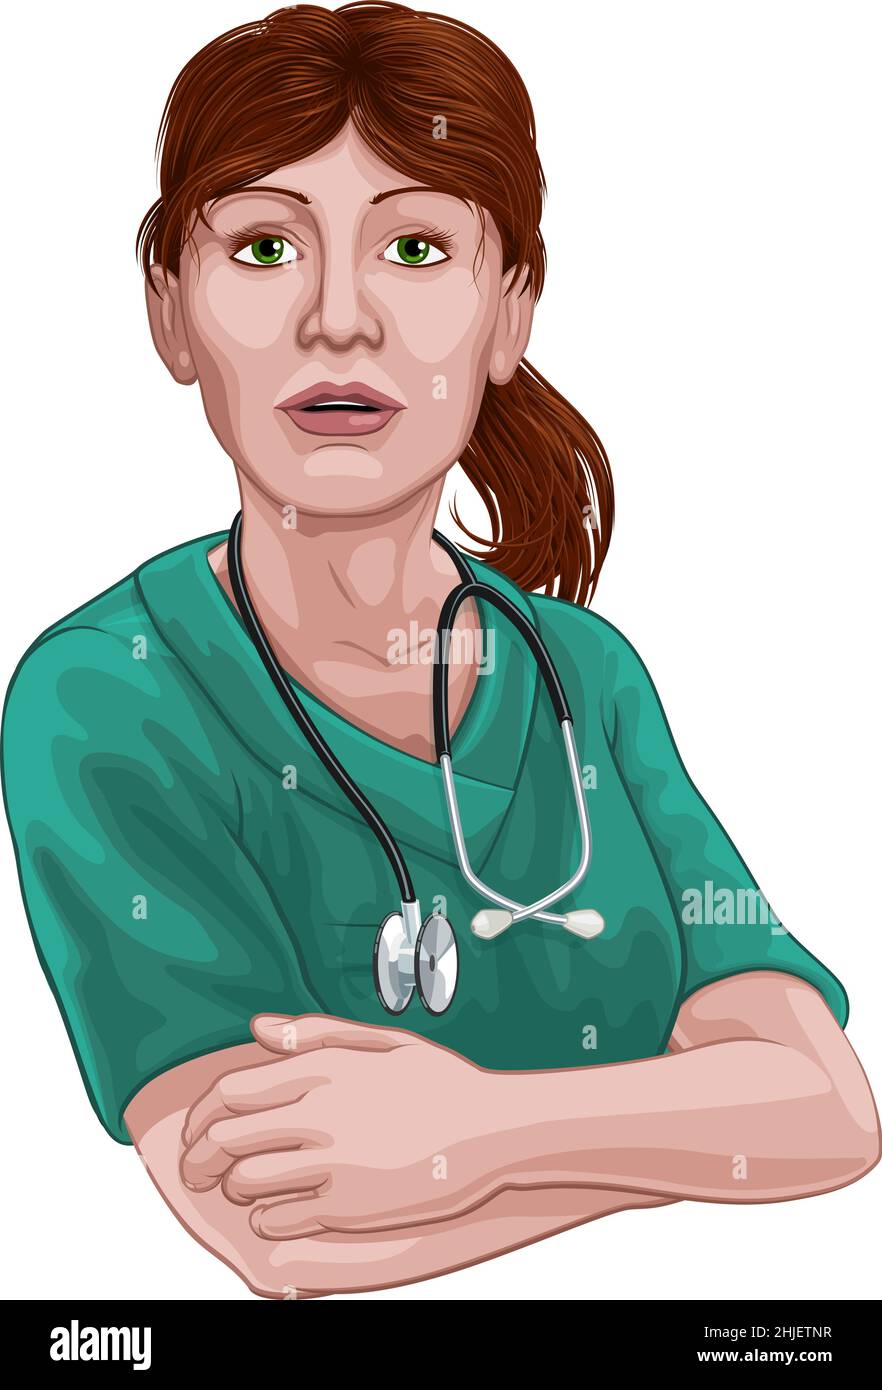 Doctor or Nurse Woman in Scrubs Uniform Stock Vector